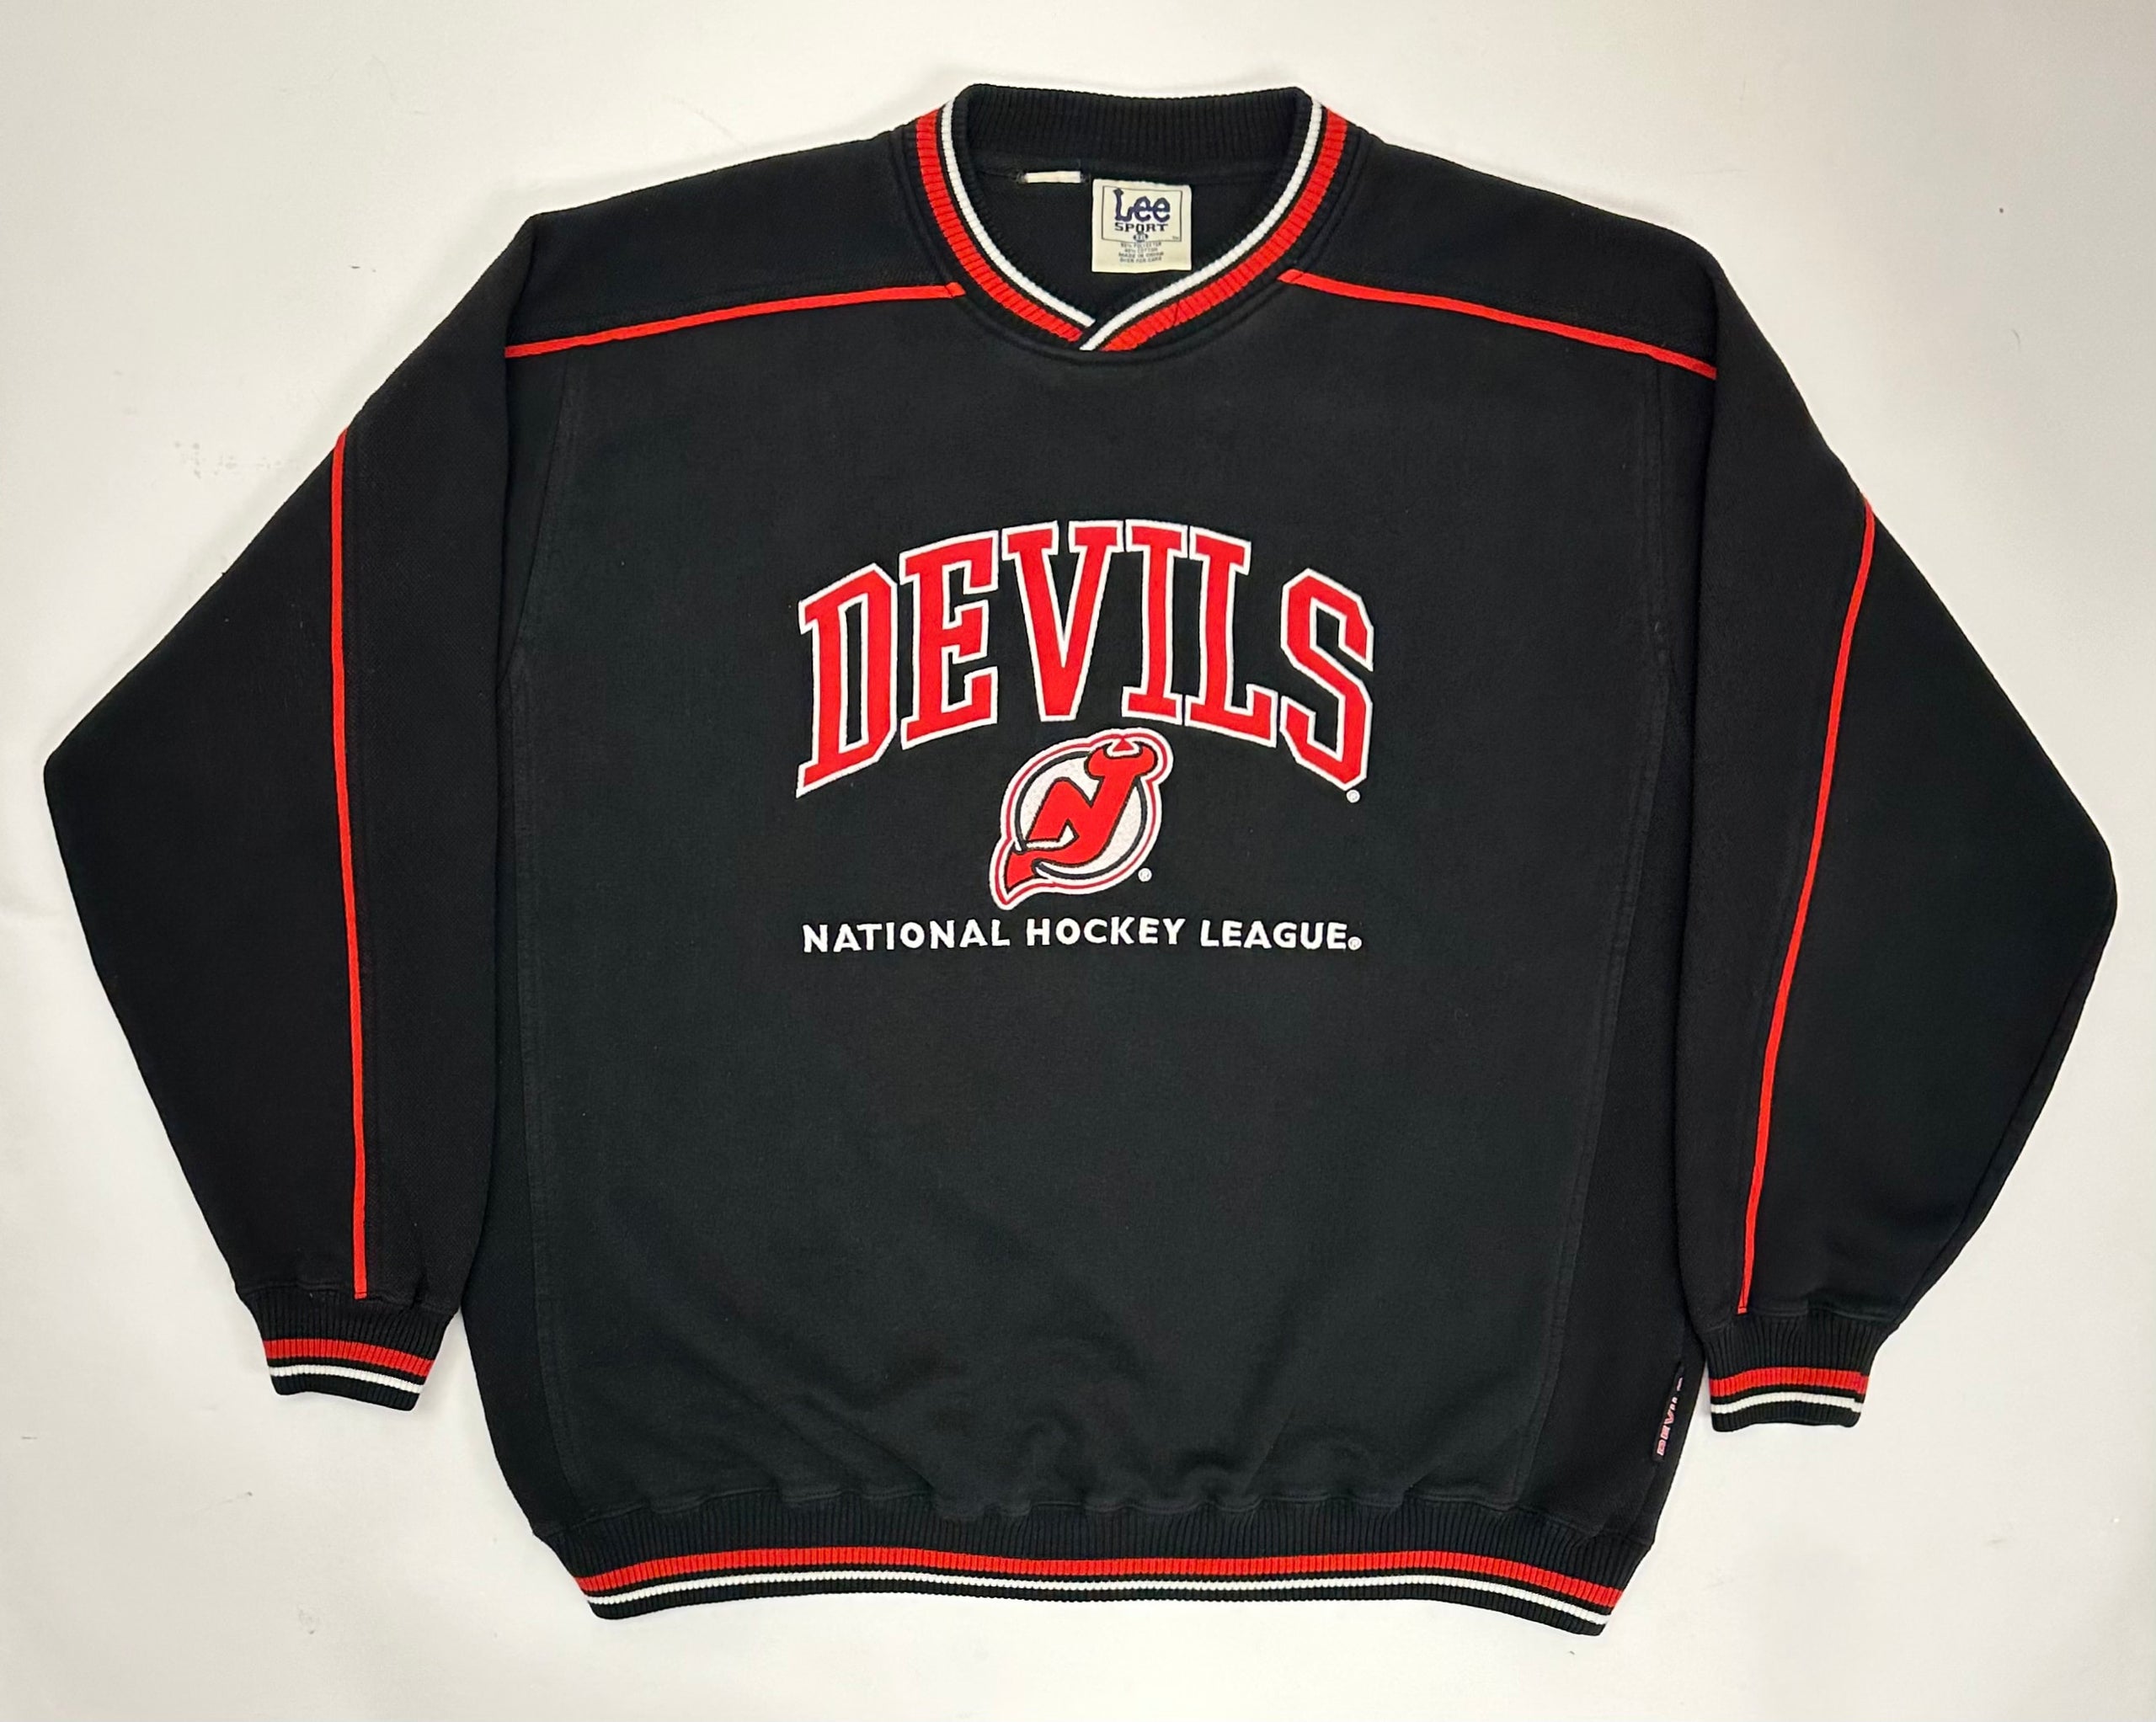 Tops, New Jersey Devils Nhl 1997 Crewneck Sweatshirt Men Women